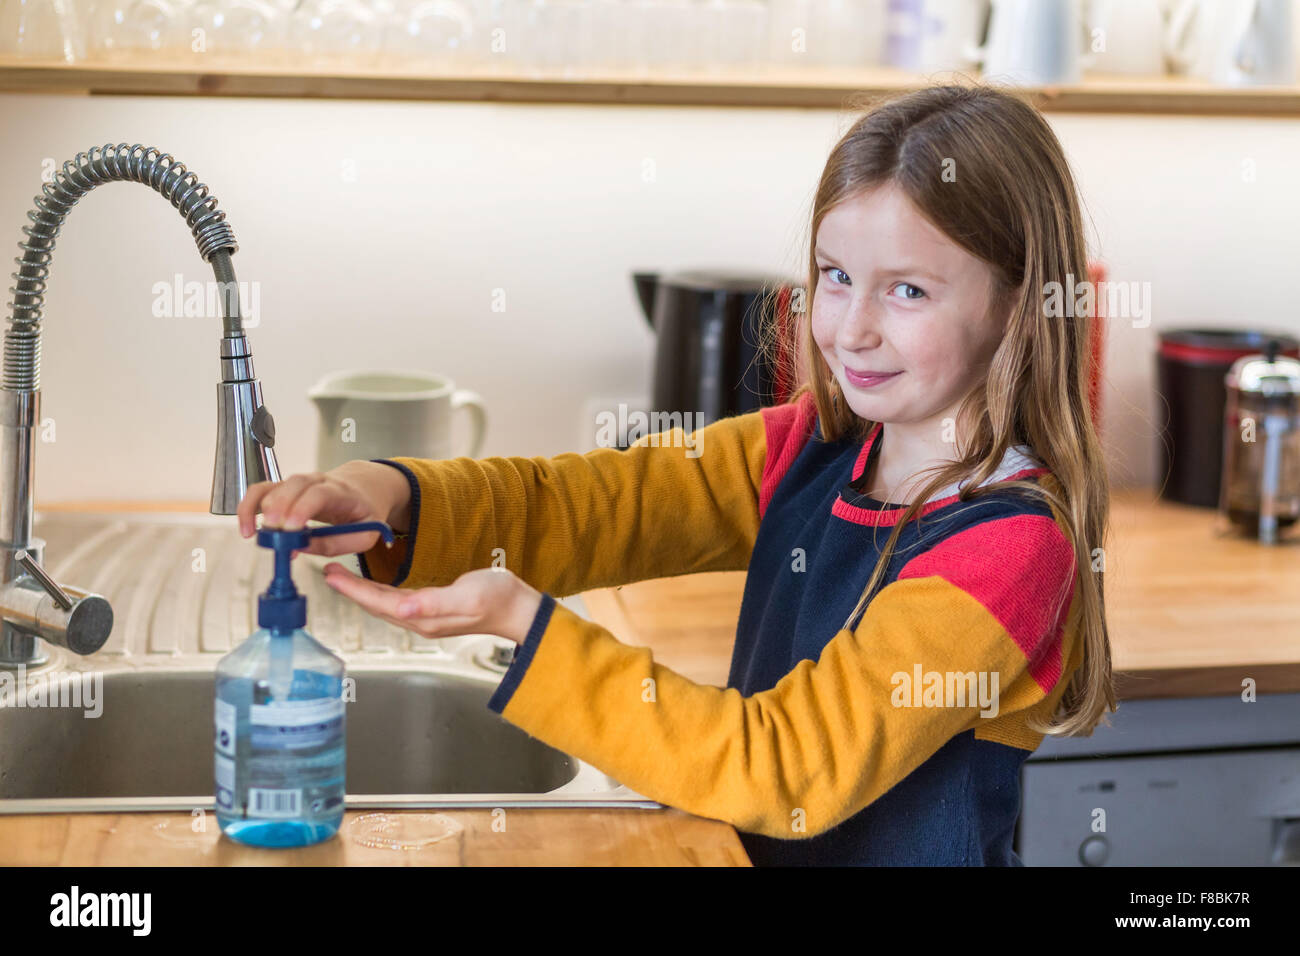 9 Jahre altes Kind waschen Sie ihre Hände mit hydroalkoholischen gel. Stockfoto